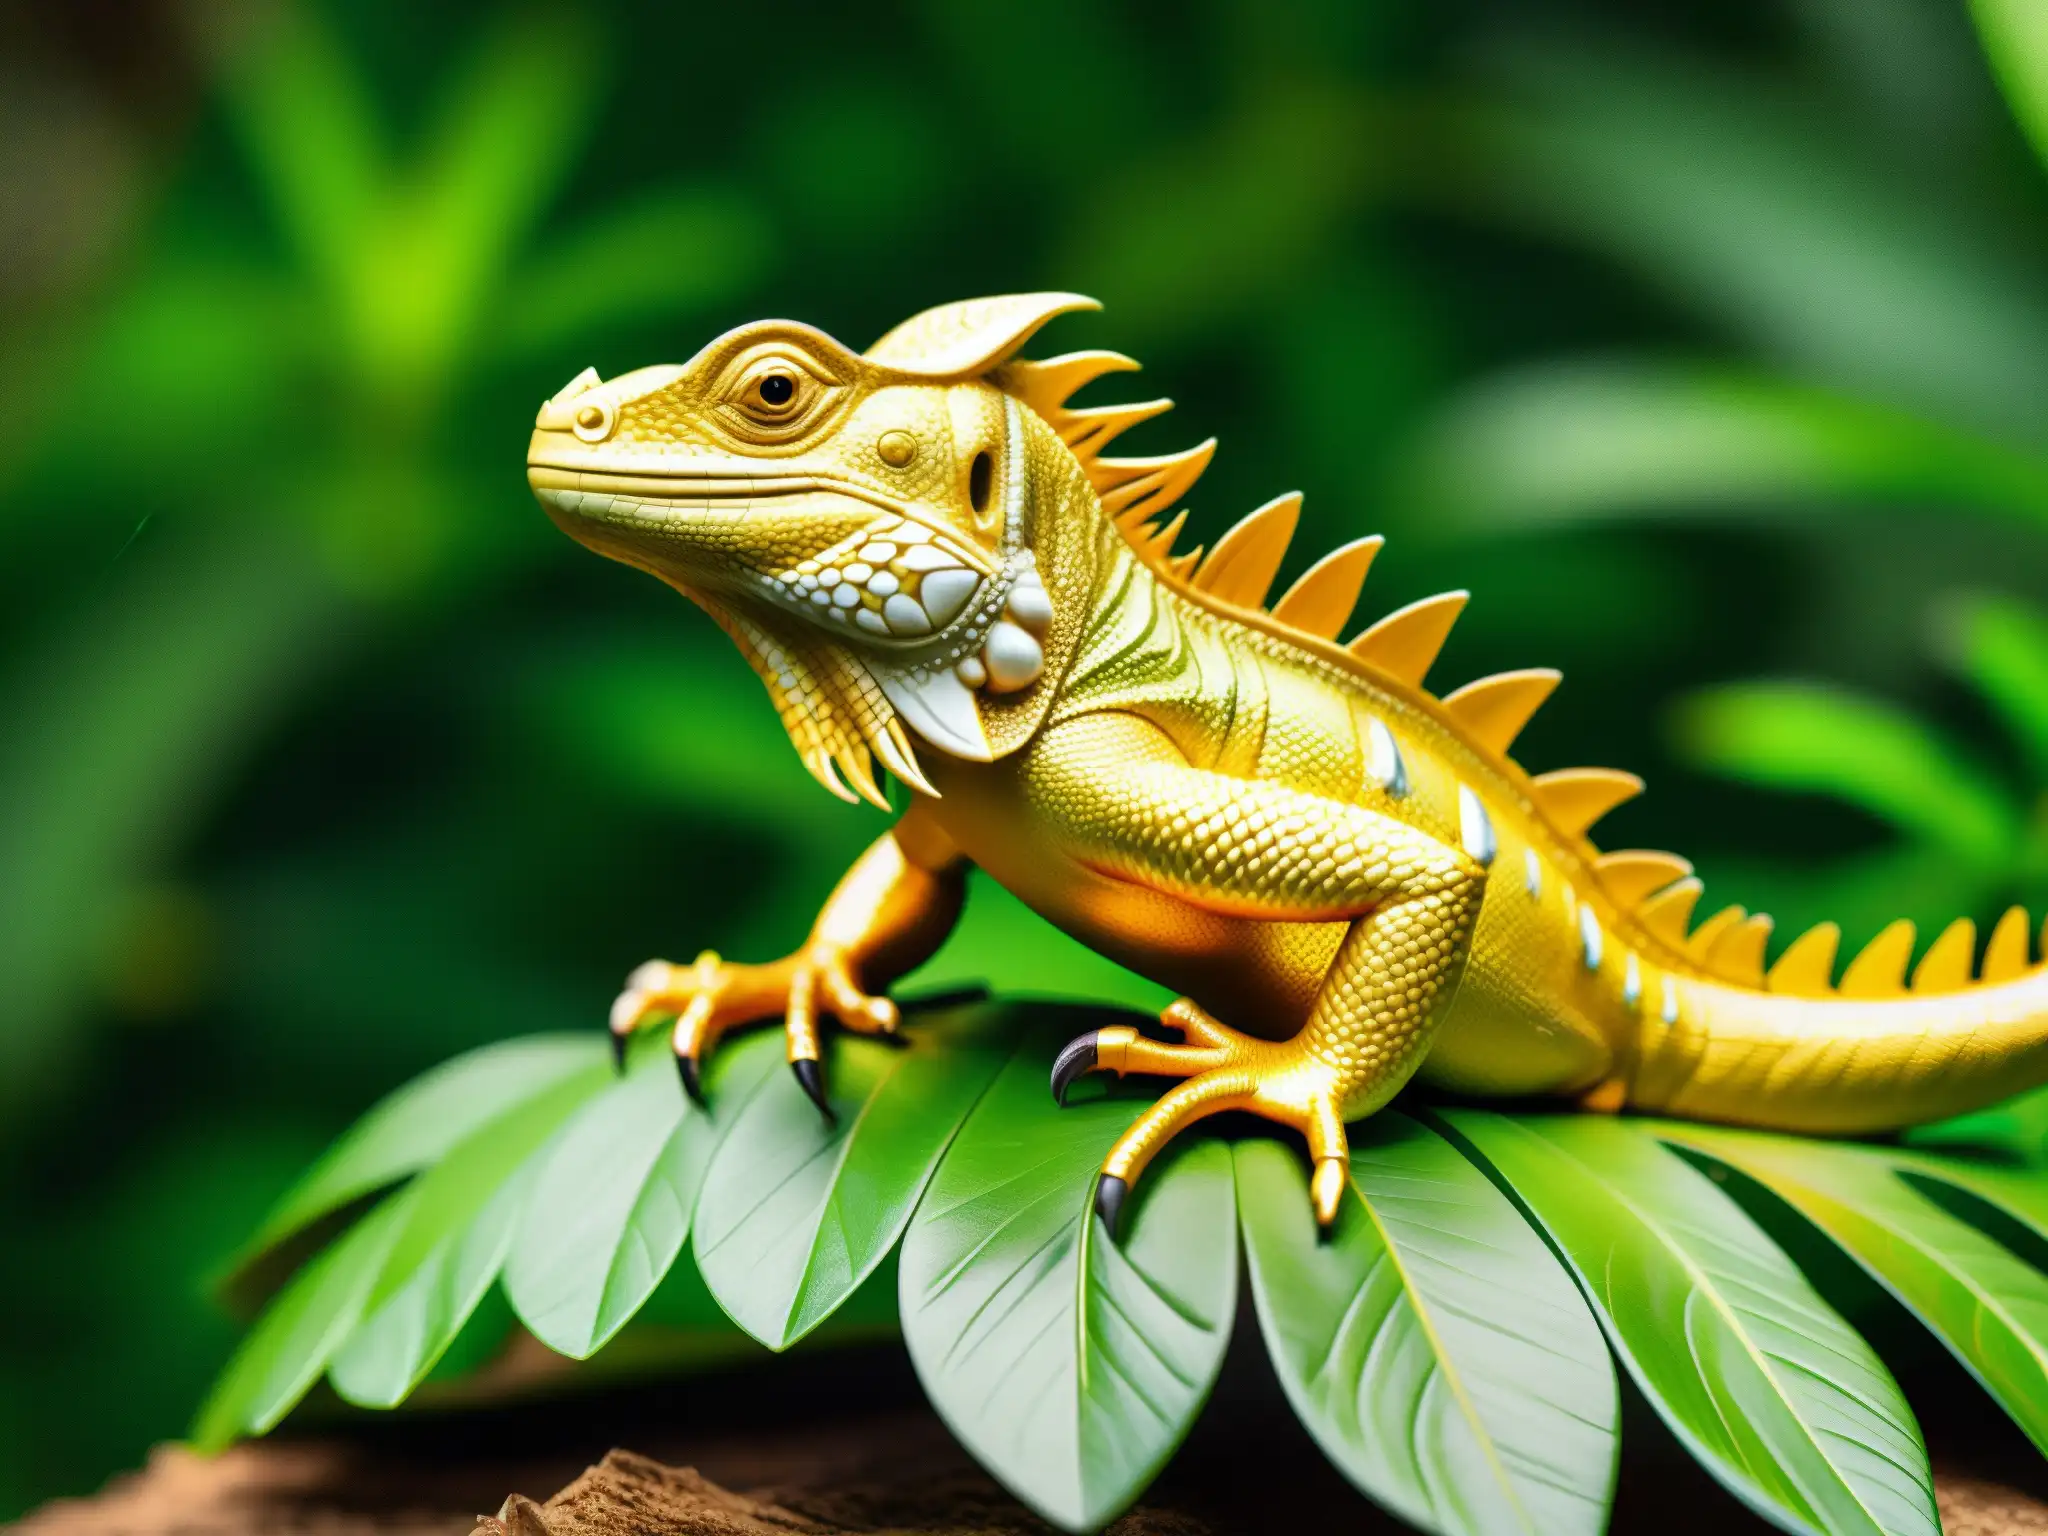 Un iguana de oro en la exuberante selva ecuatoriana, capturando el tesoro mítico de las iguanas de oro con su brillo dorado y detalles fascinantes